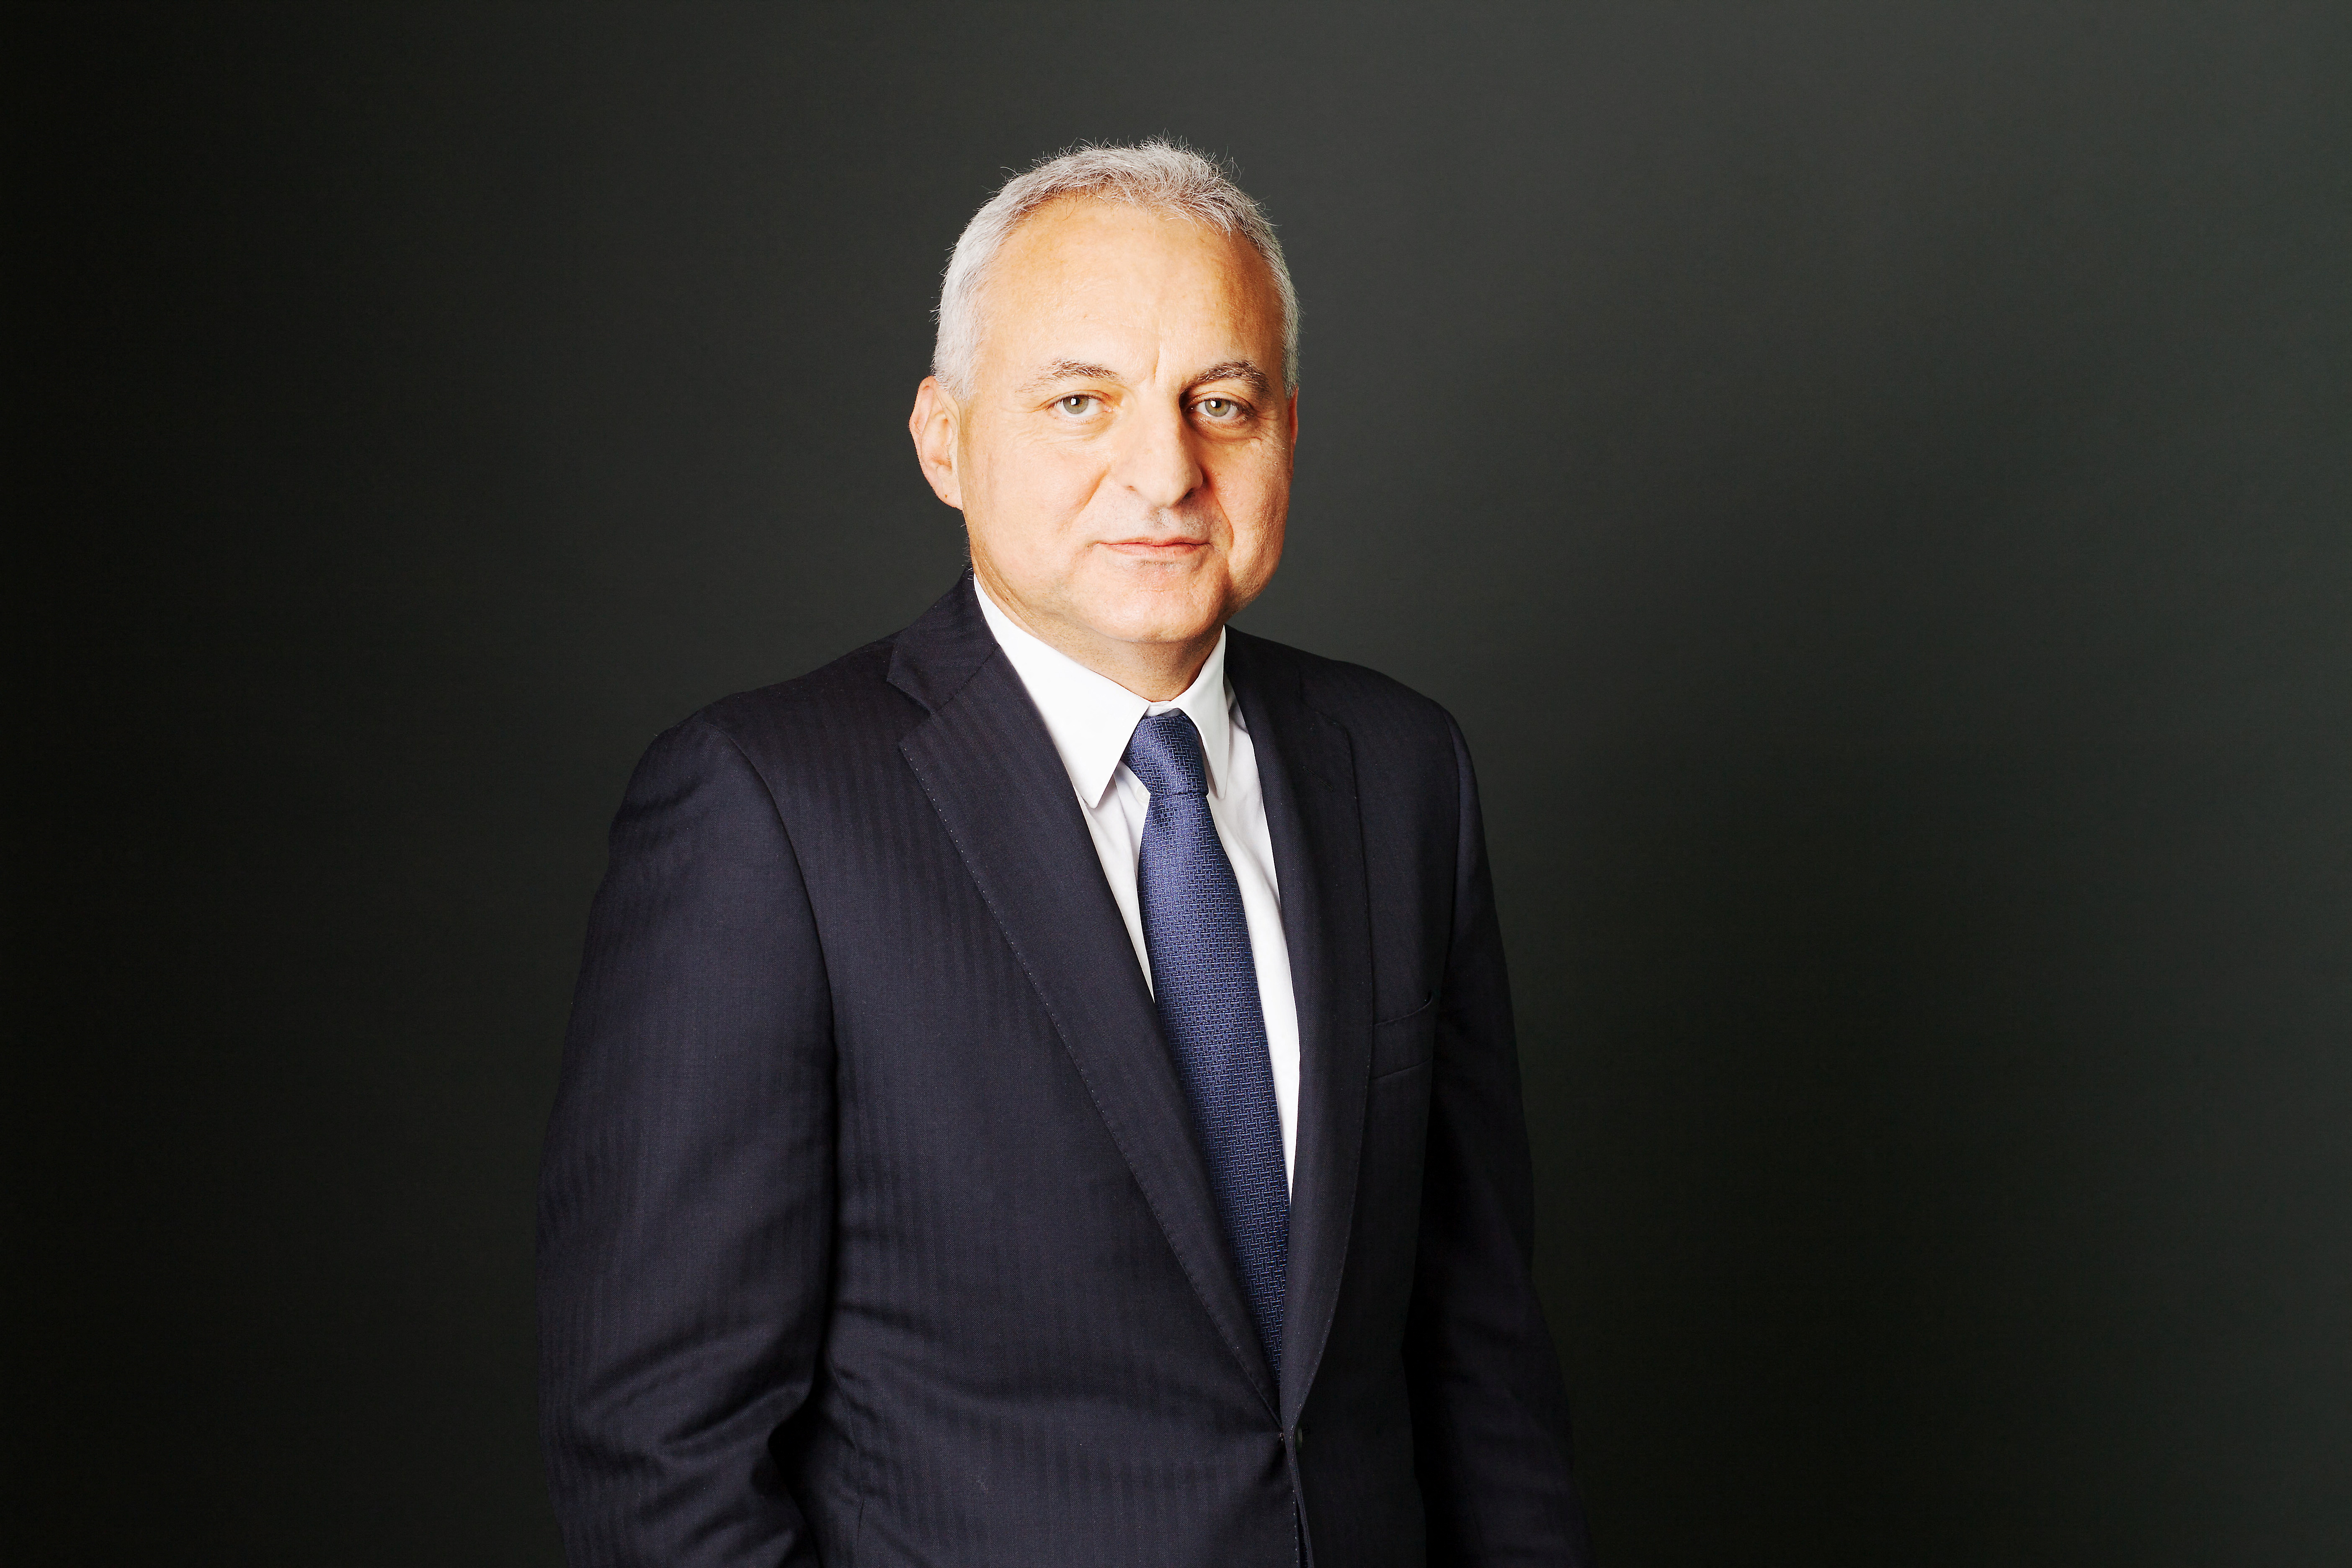 Tufan Erginbilgic, el CEO de Rolls-Royce expresó su preocupación por el desempeño de la empresa. (ROLLS-ROYCE)